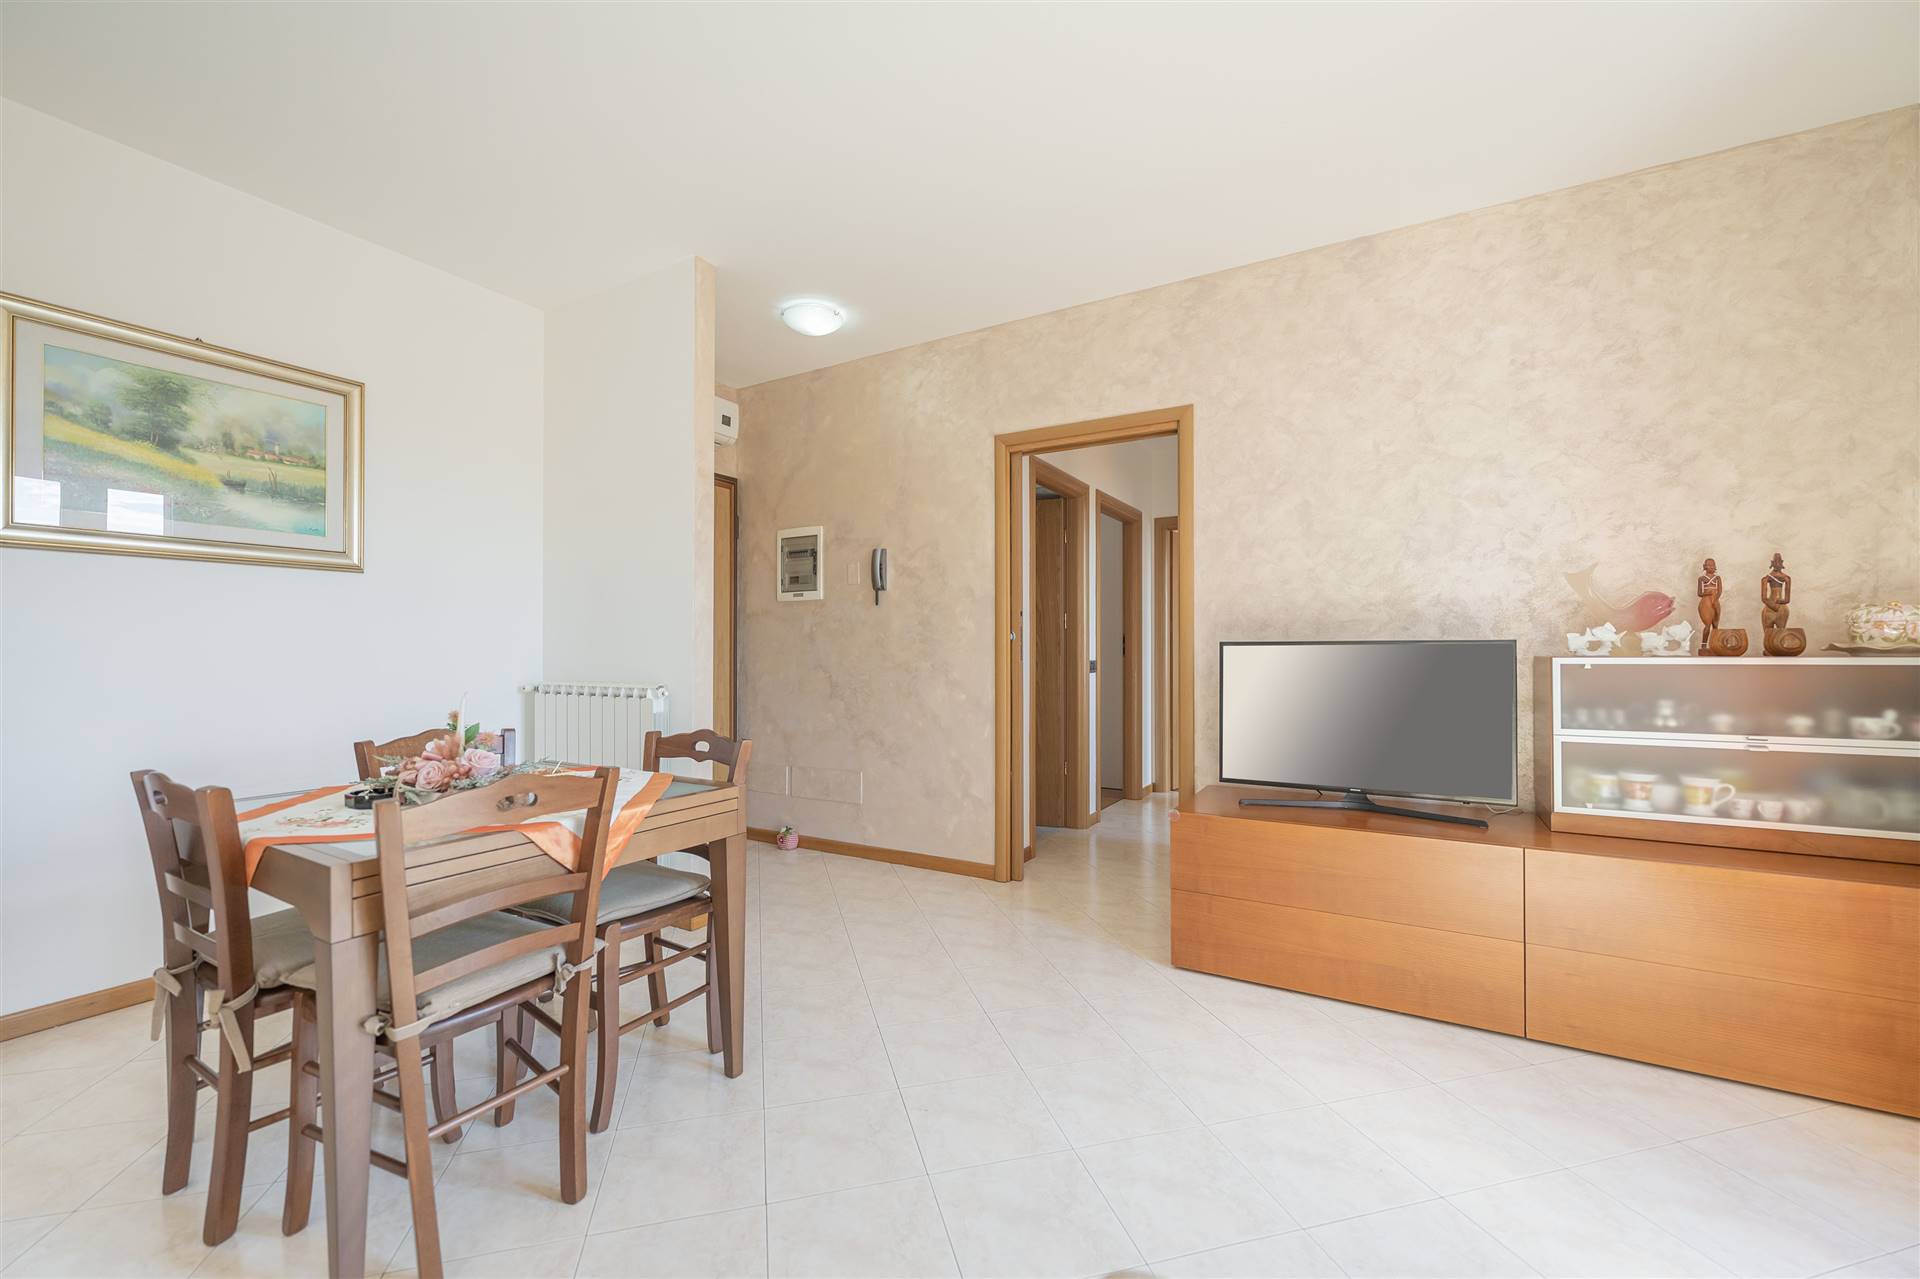 Appartamento in vendita a Pianiga, 4 locali, prezzo € 165.000 | PortaleAgenzieImmobiliari.it